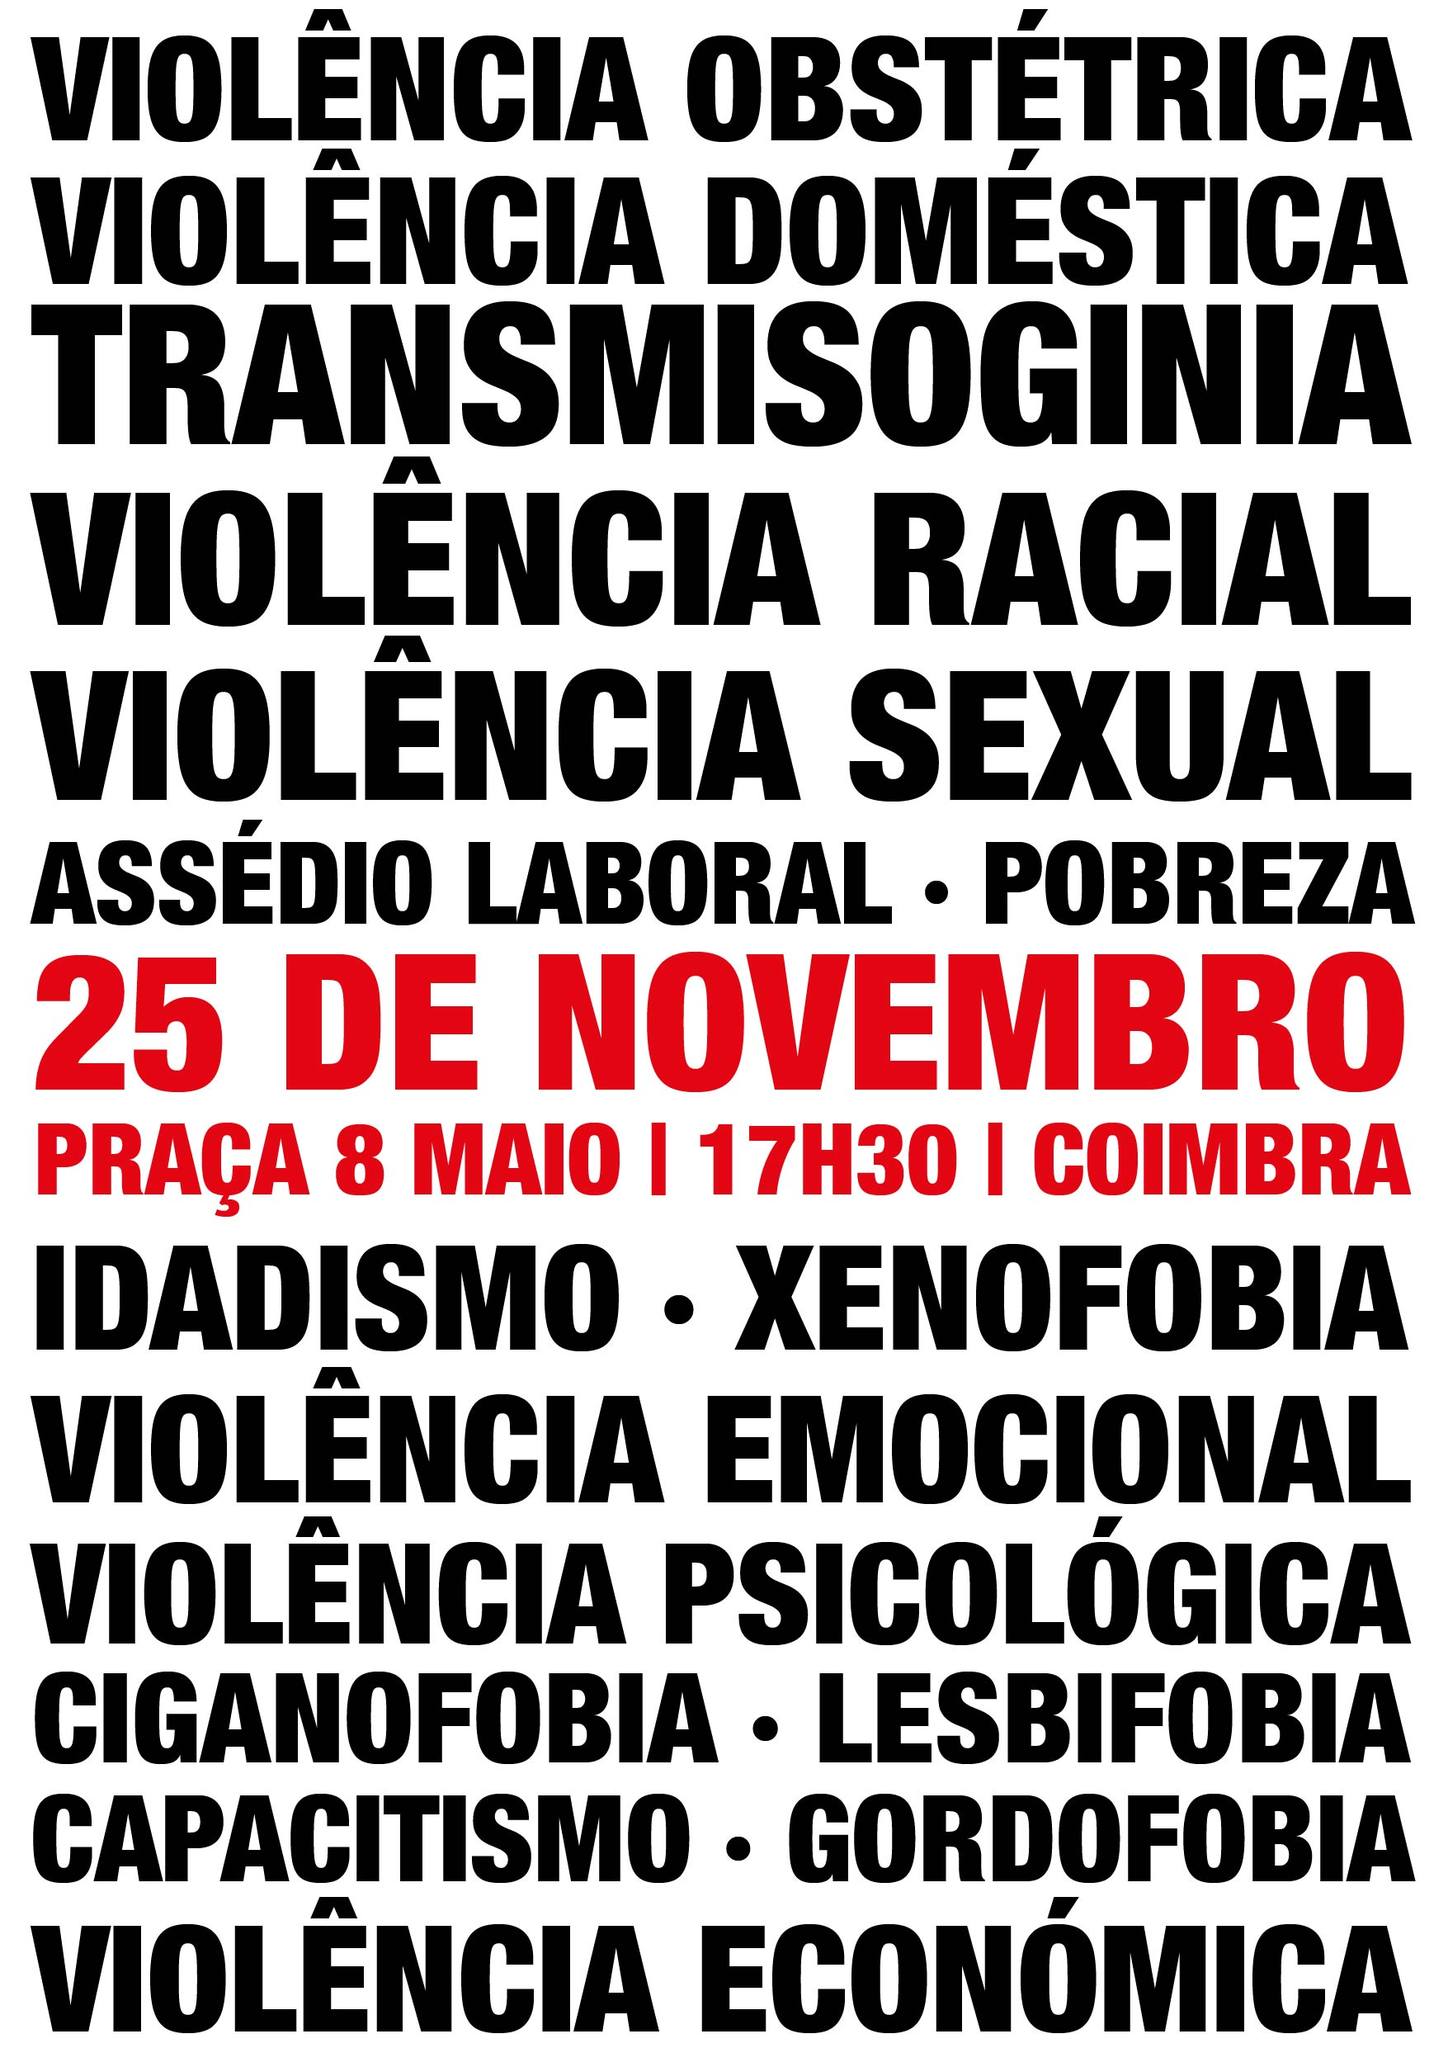 25N Coimbra - Dia Internacional pela Eliminação da Violência contra as Mulheres!